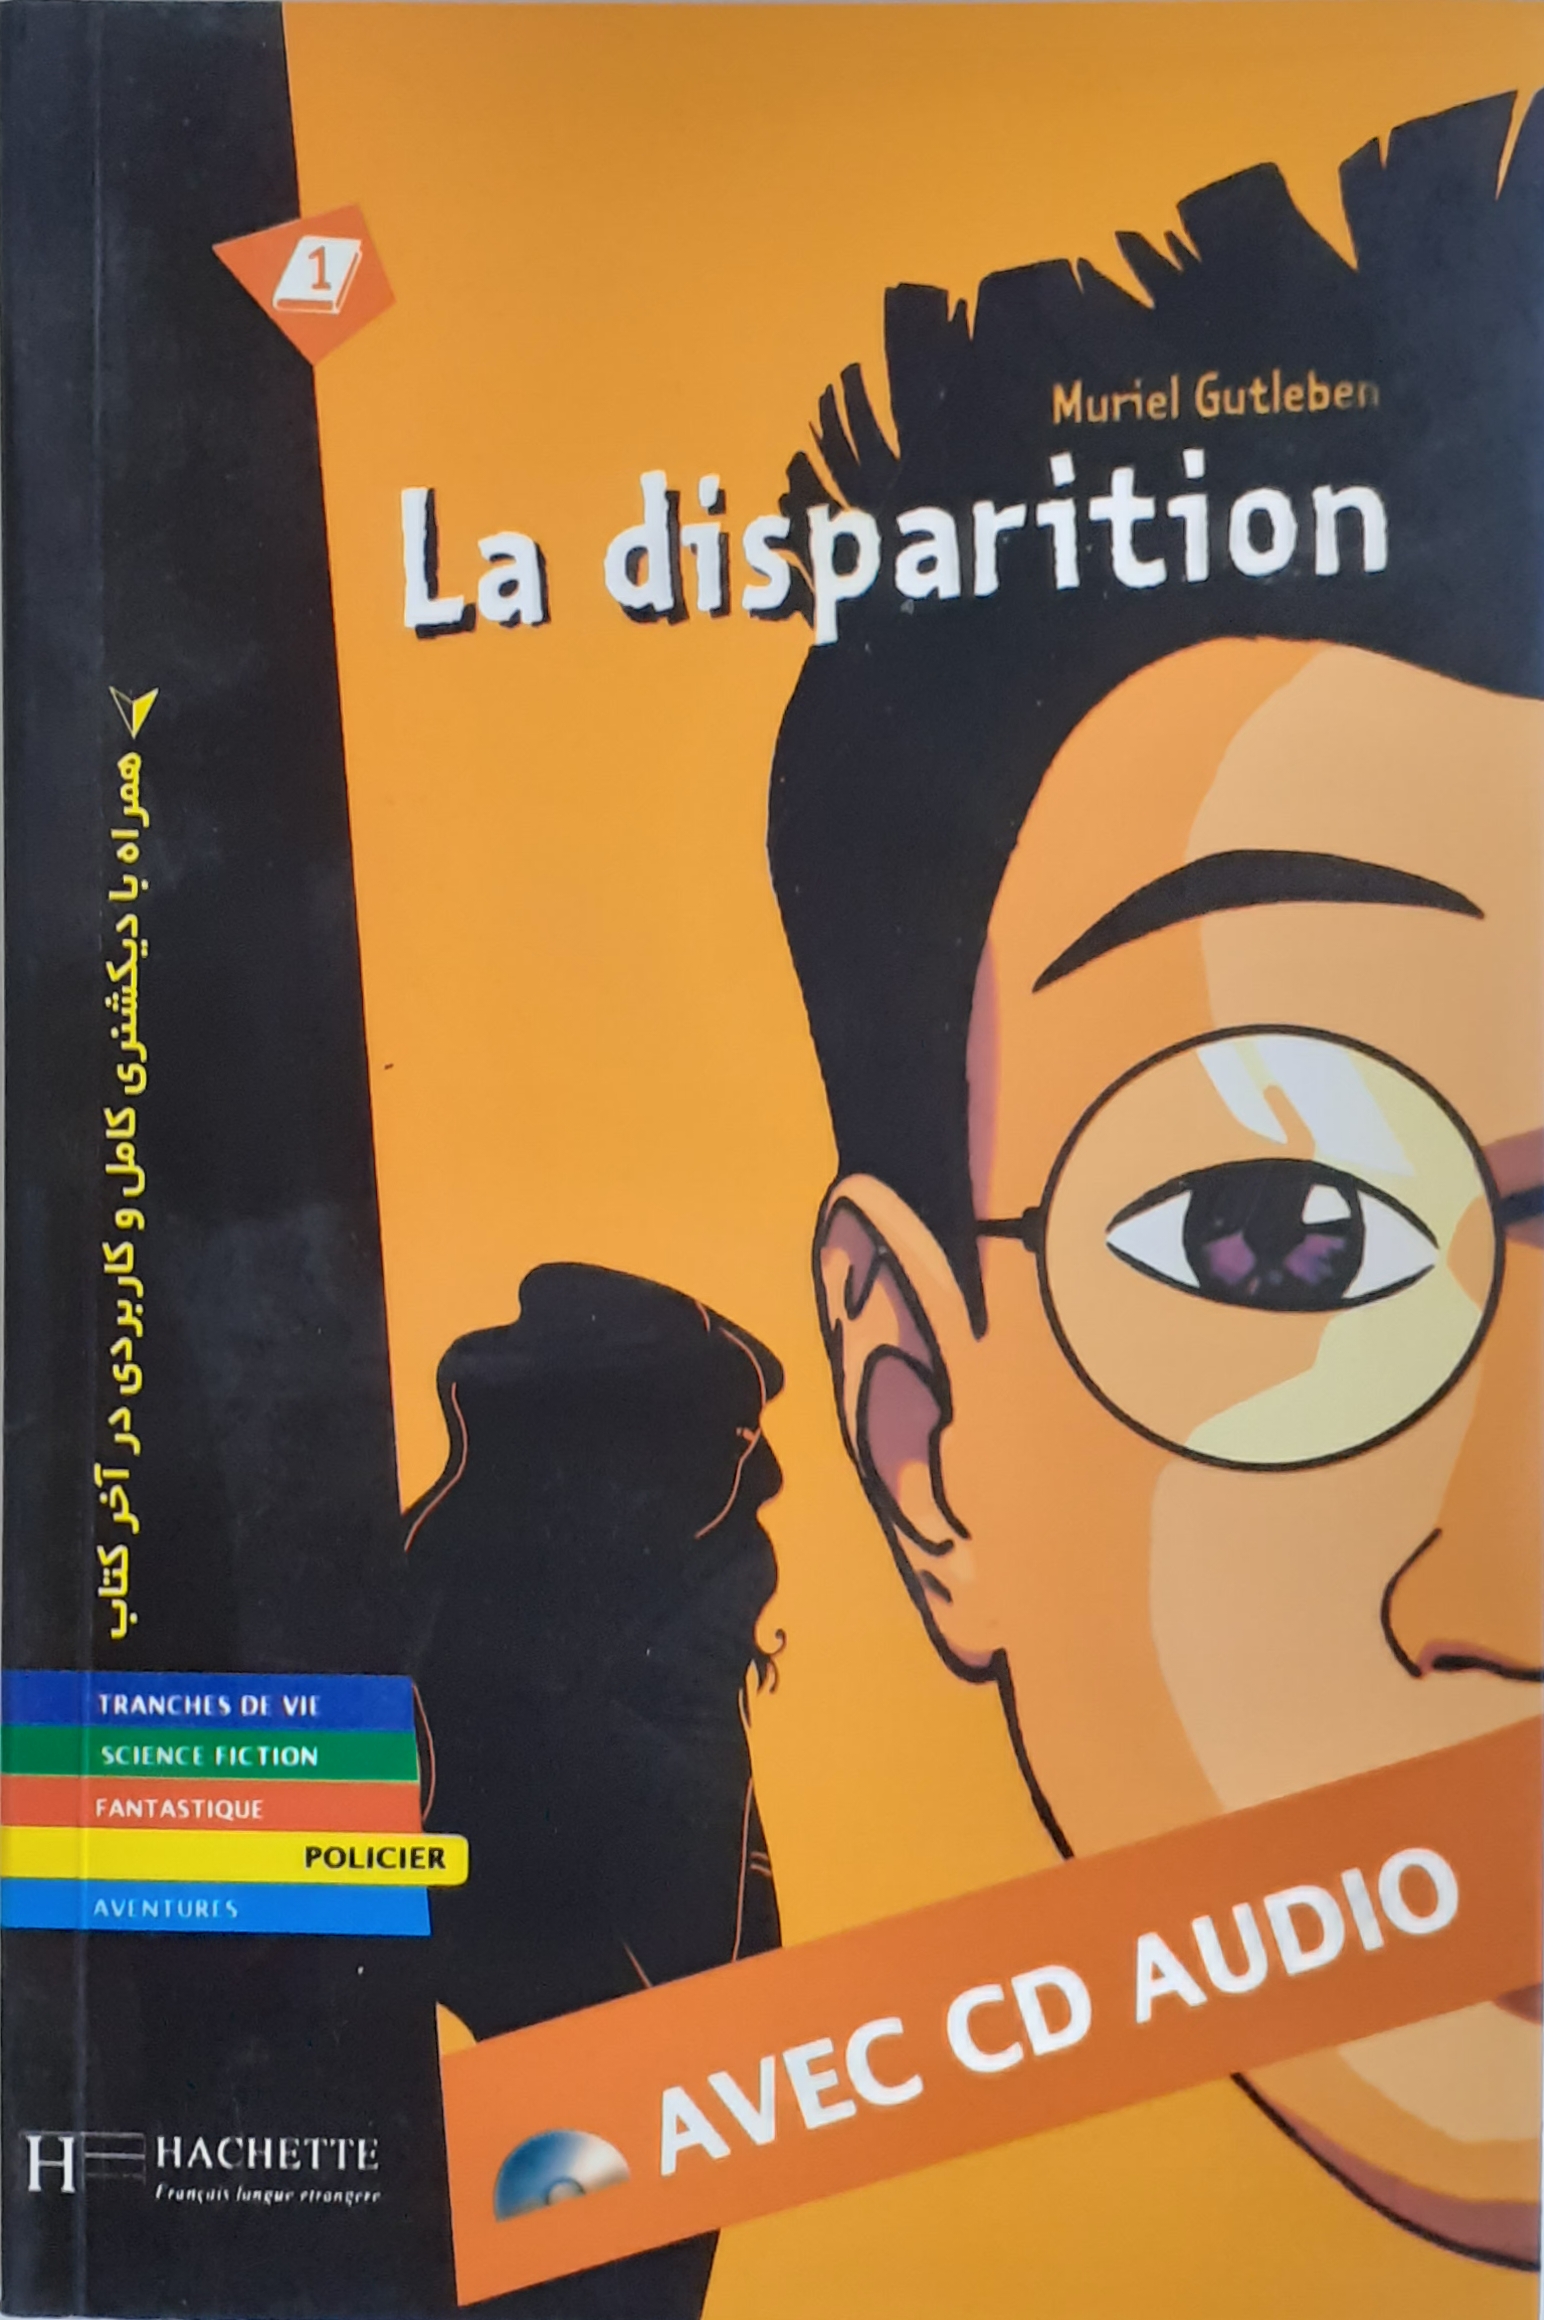 کتاب داستان فرانسه نا پدید شدن LA disparition با ترجمه فارسی